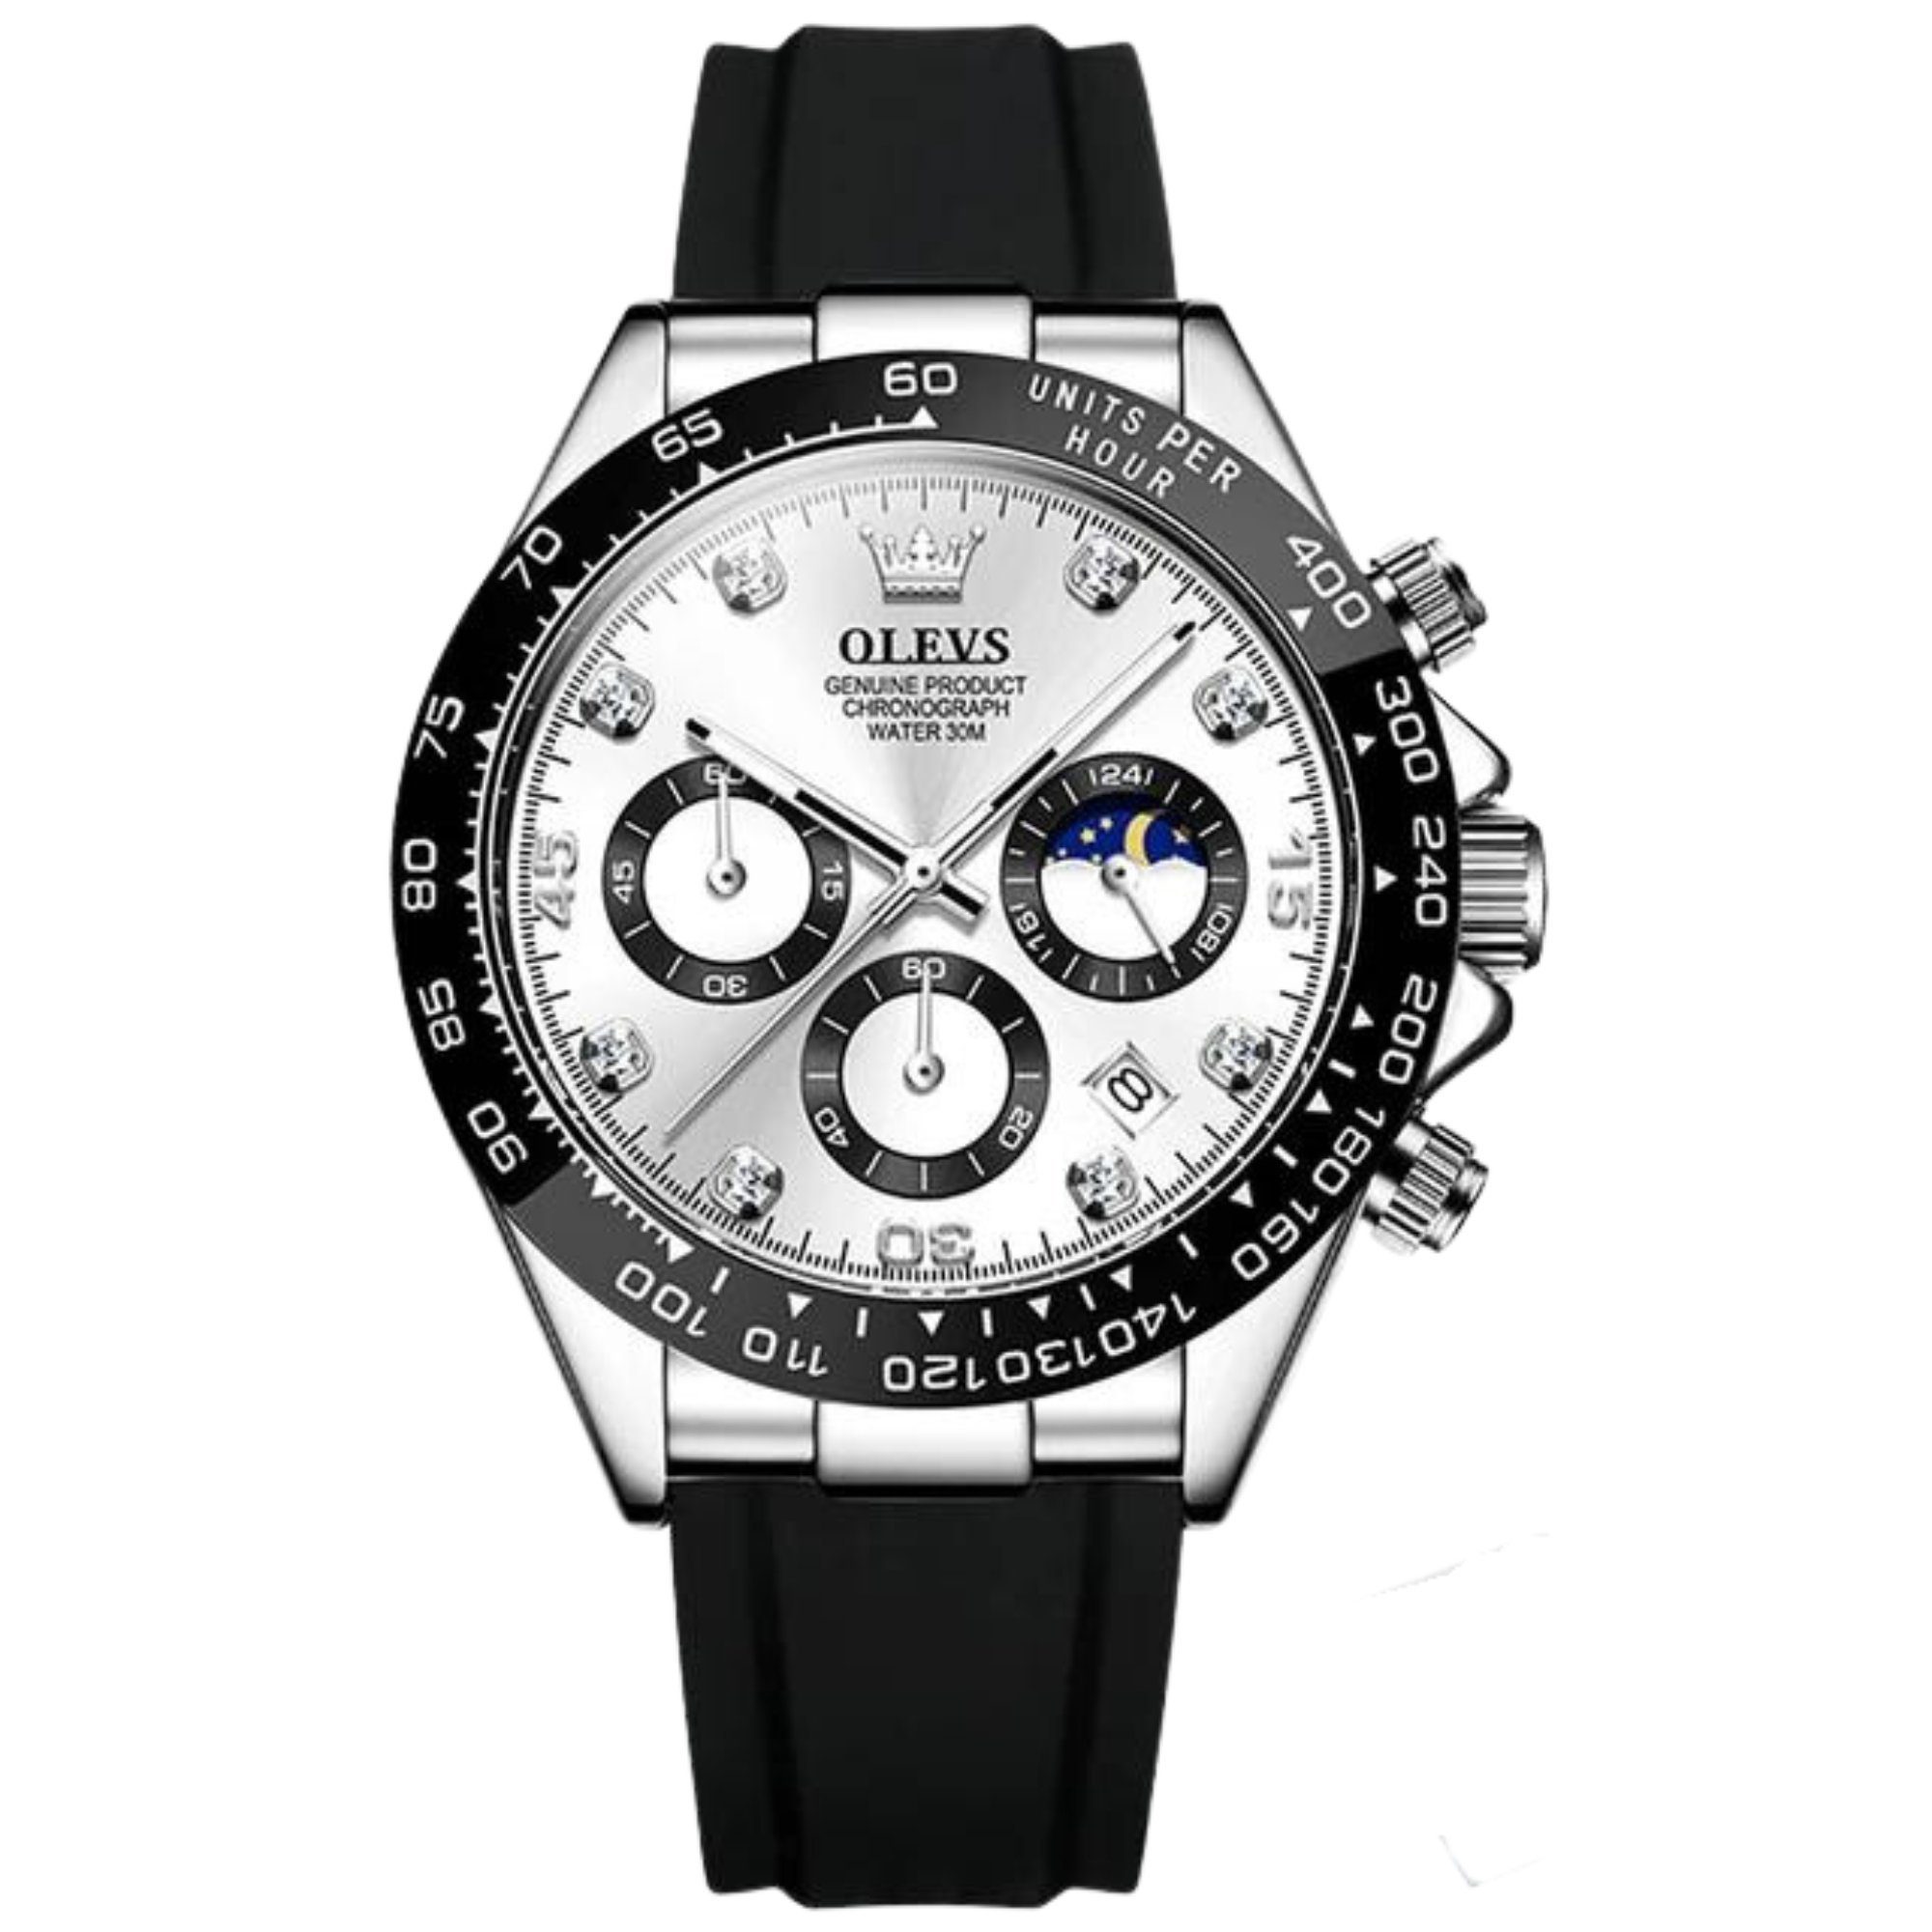 Nachhaltige Herren Armbanduhren online kaufen | OTTO